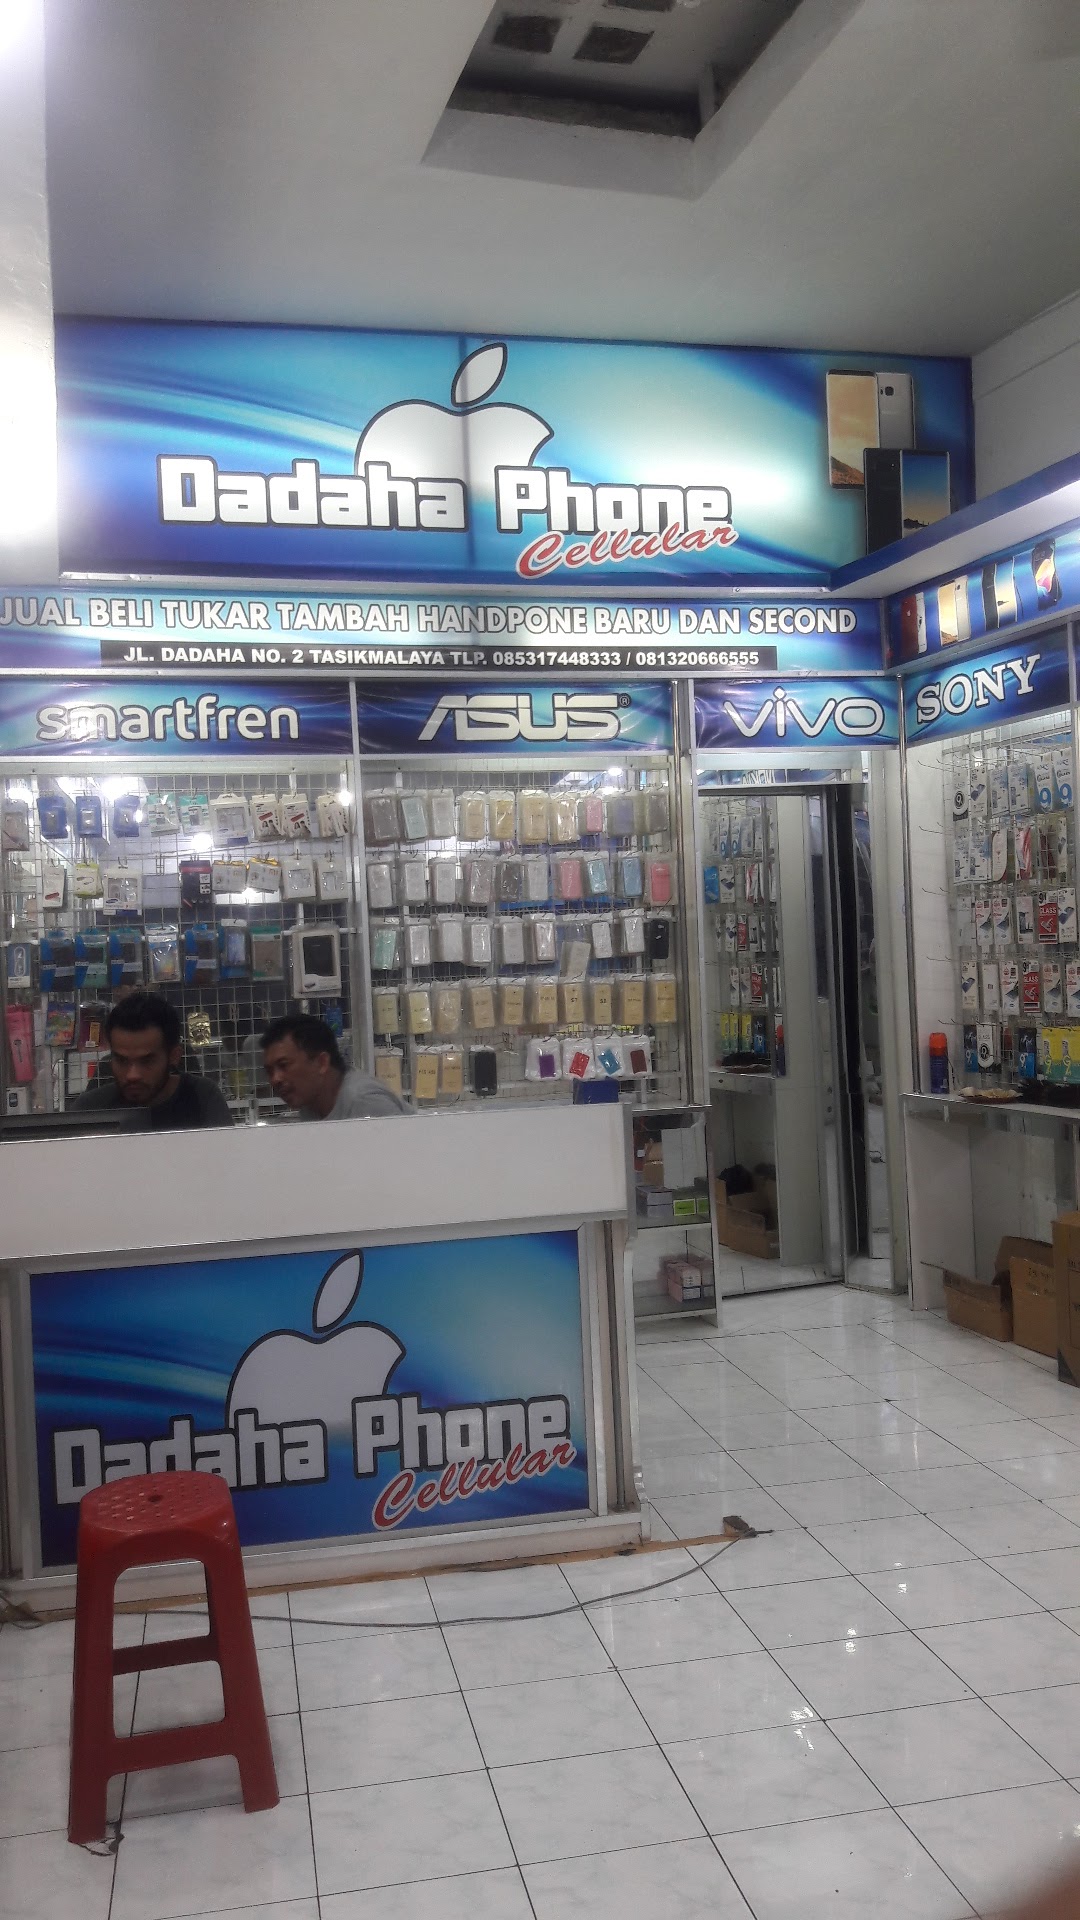 Dadaha Phone Cell